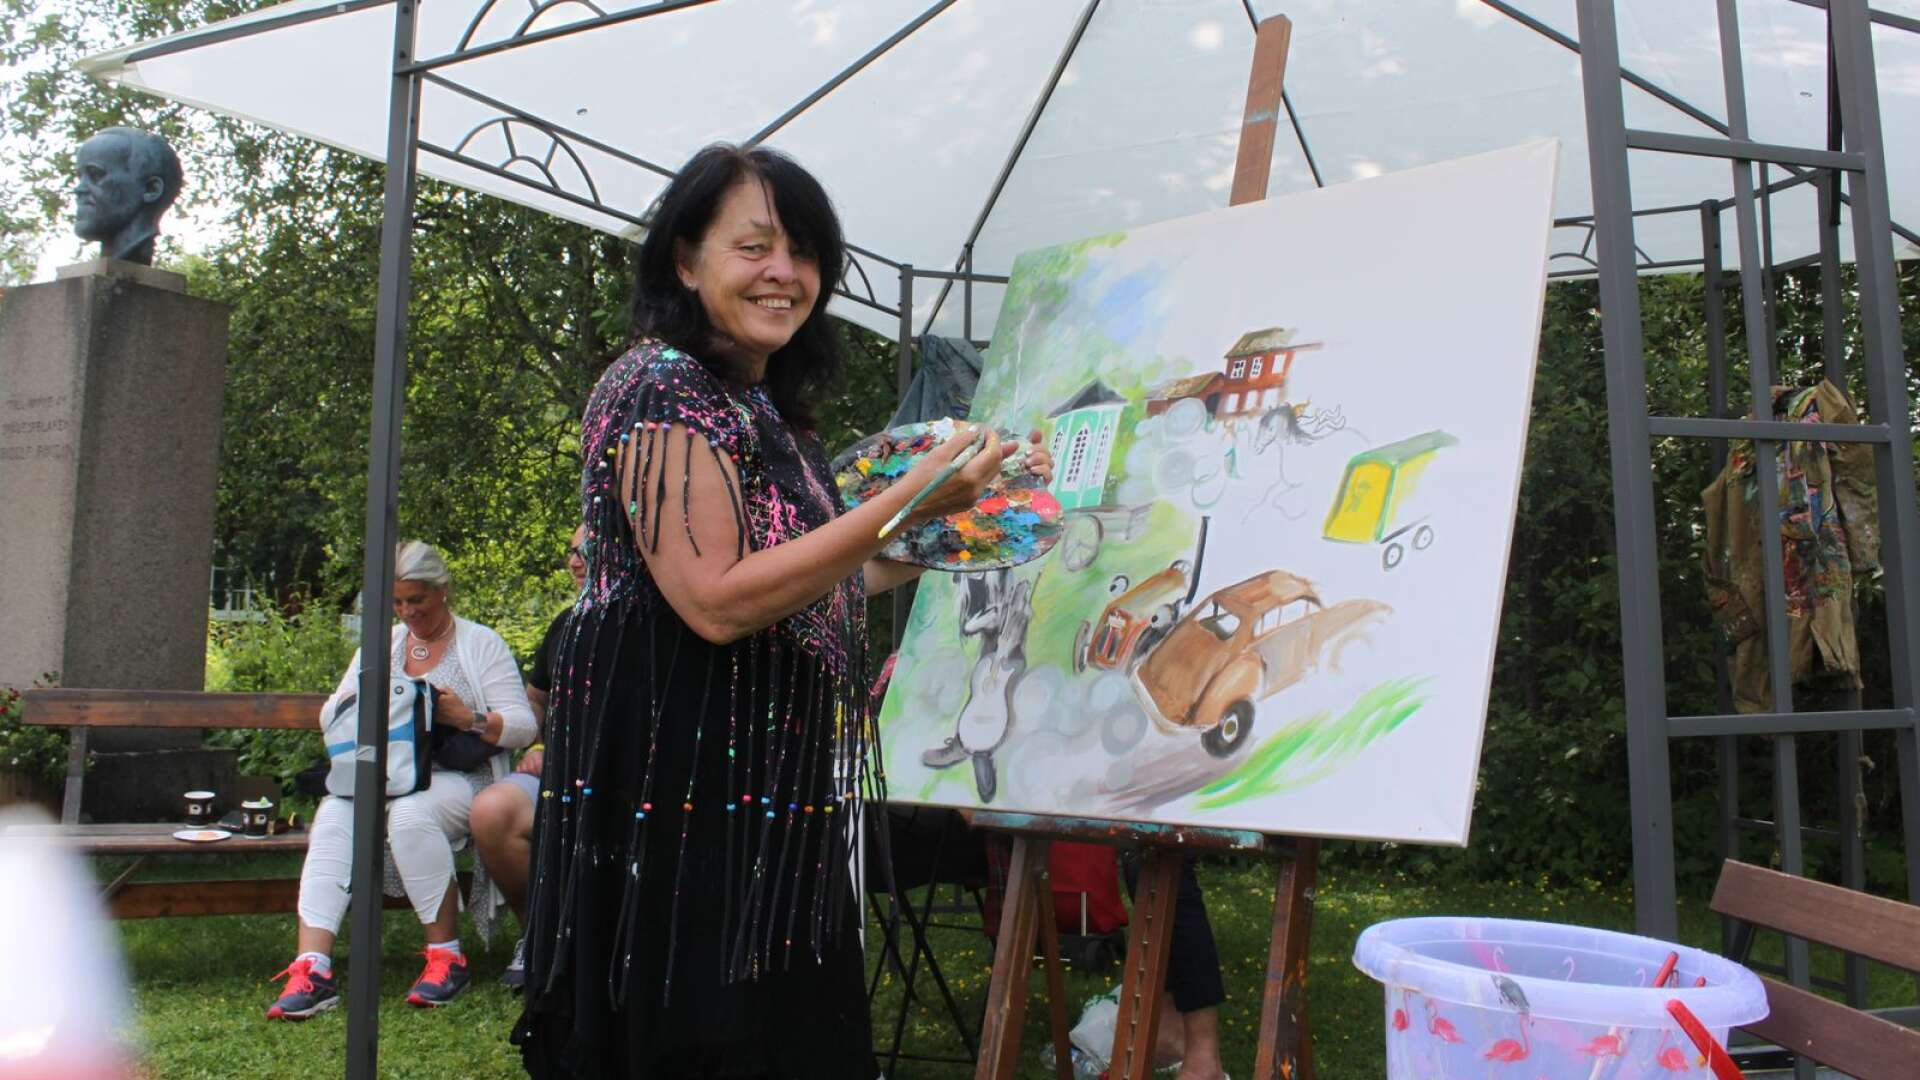 Konstnären Marja i Myrom målade en spektakulär tavla som lottades ut under lördagen. Bland annat föreställer den Pippi Långstrump, då skådespelerskan Inger Nilsson tidigare har vunnit Fridolf Rhudin-priset. 